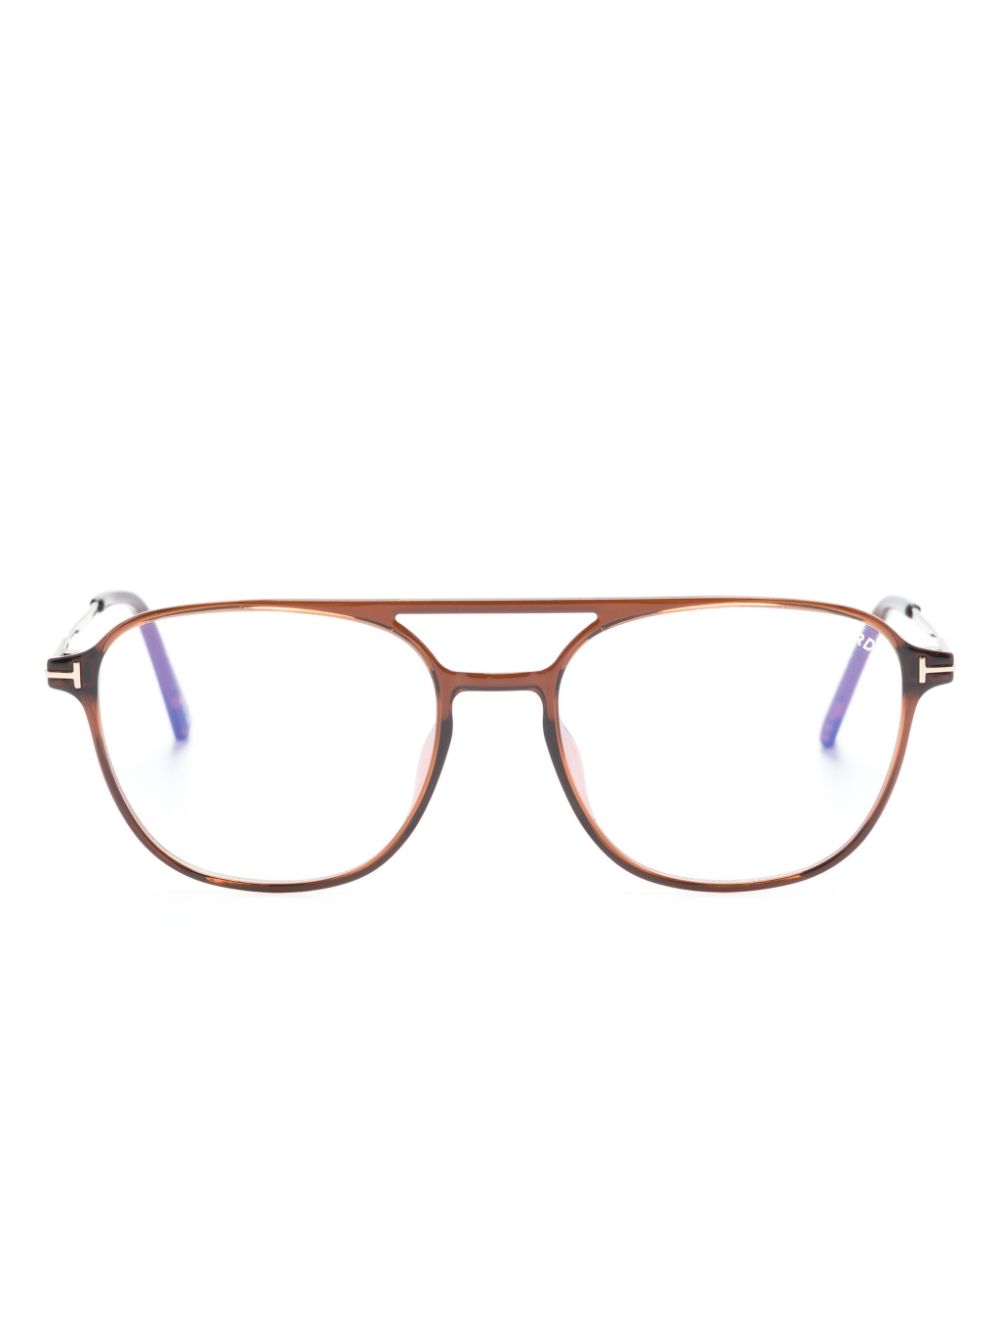 TOM FORD Eyewear tortoiseshell-effect pilot-frame glasses - Brown